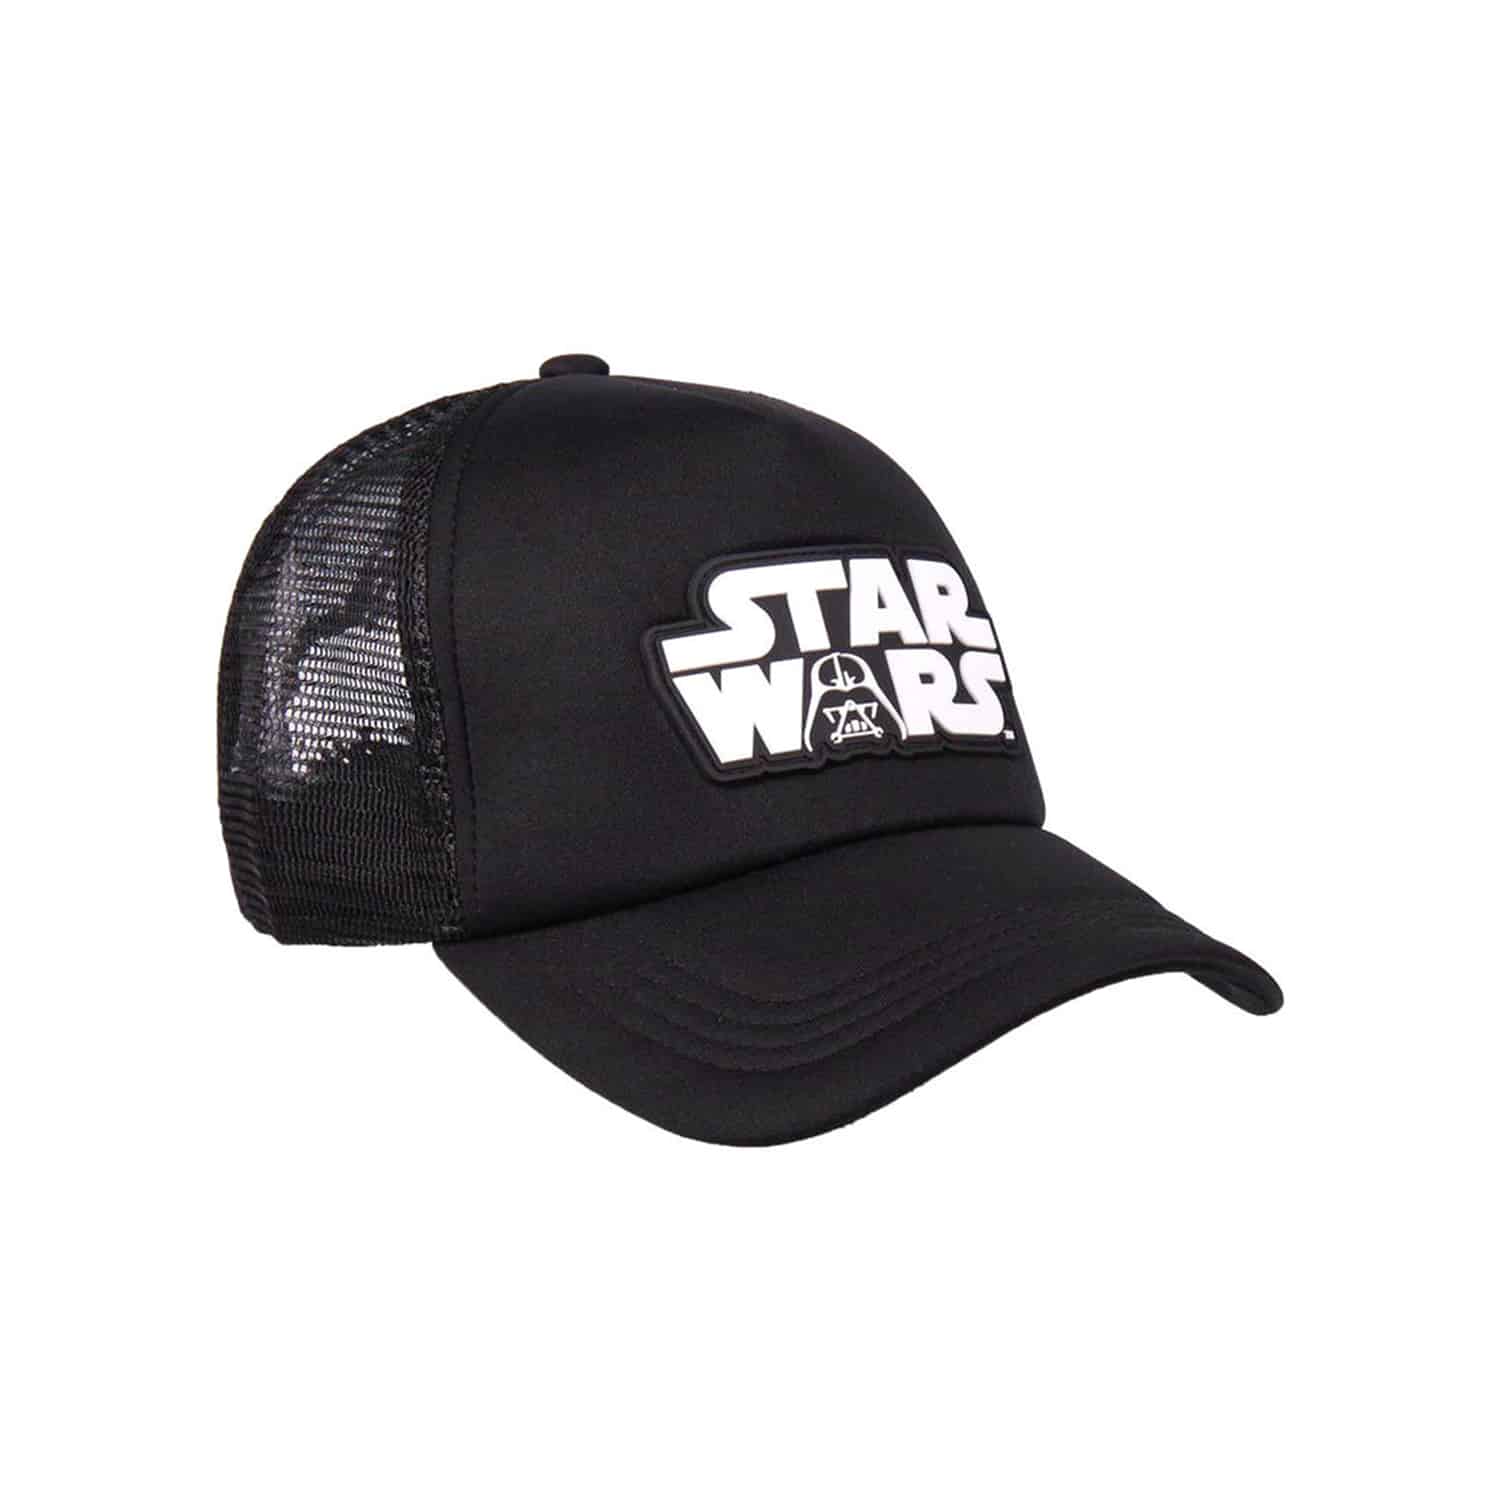 Star Wars - Vader Logo Cap